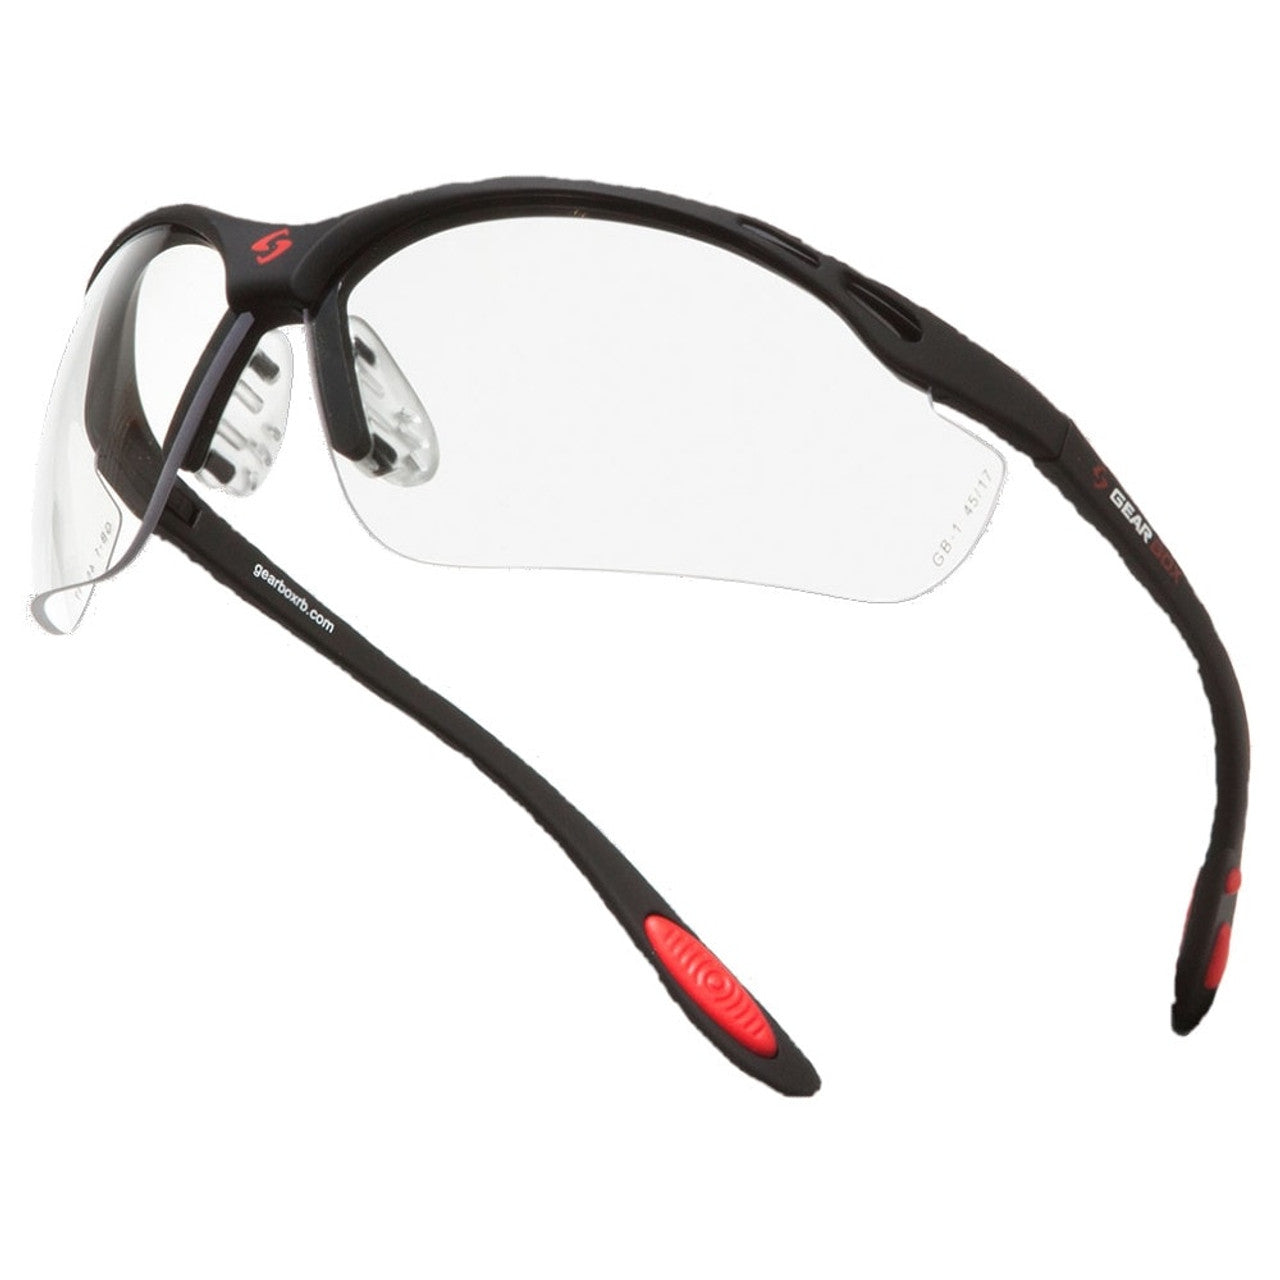 Gearbox Vision Safety Eyewear